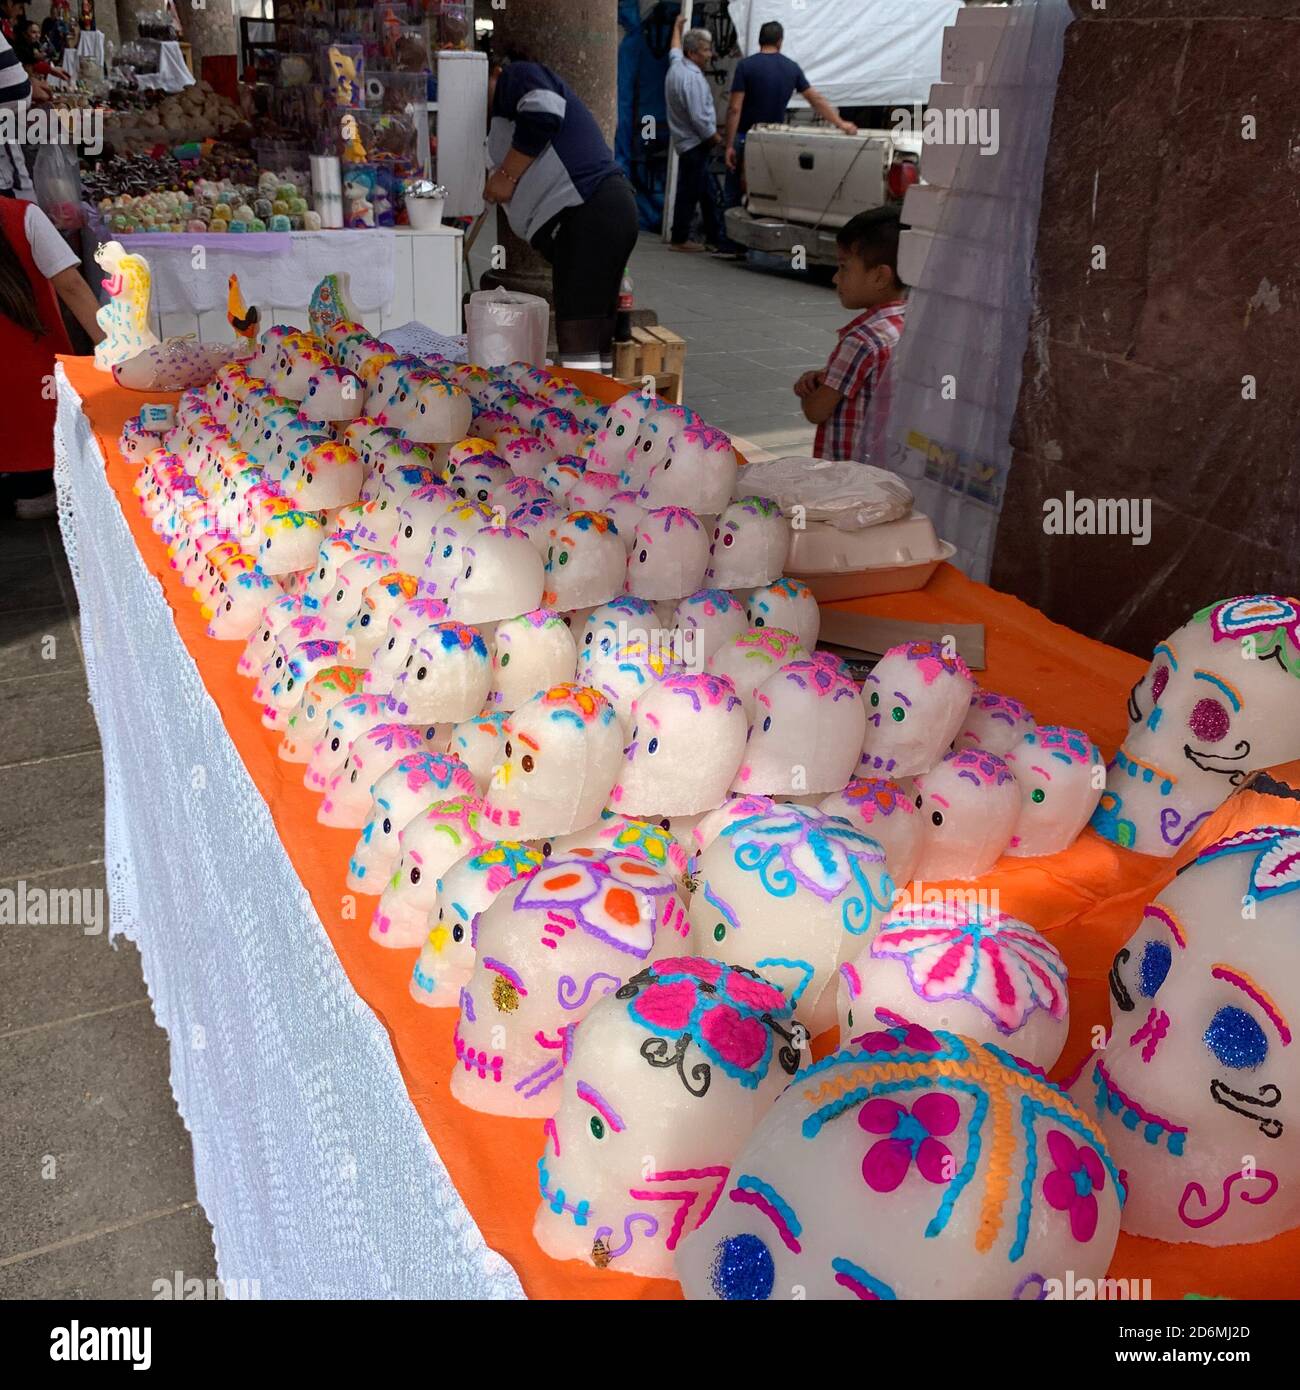 Les crânes de sucre traditionnels à vendre à Patzcuaro, au Mexique, où ils sont utilisés pour décorer les autels créés pour se souvenir des morts pendant le jour des morts. Banque D'Images